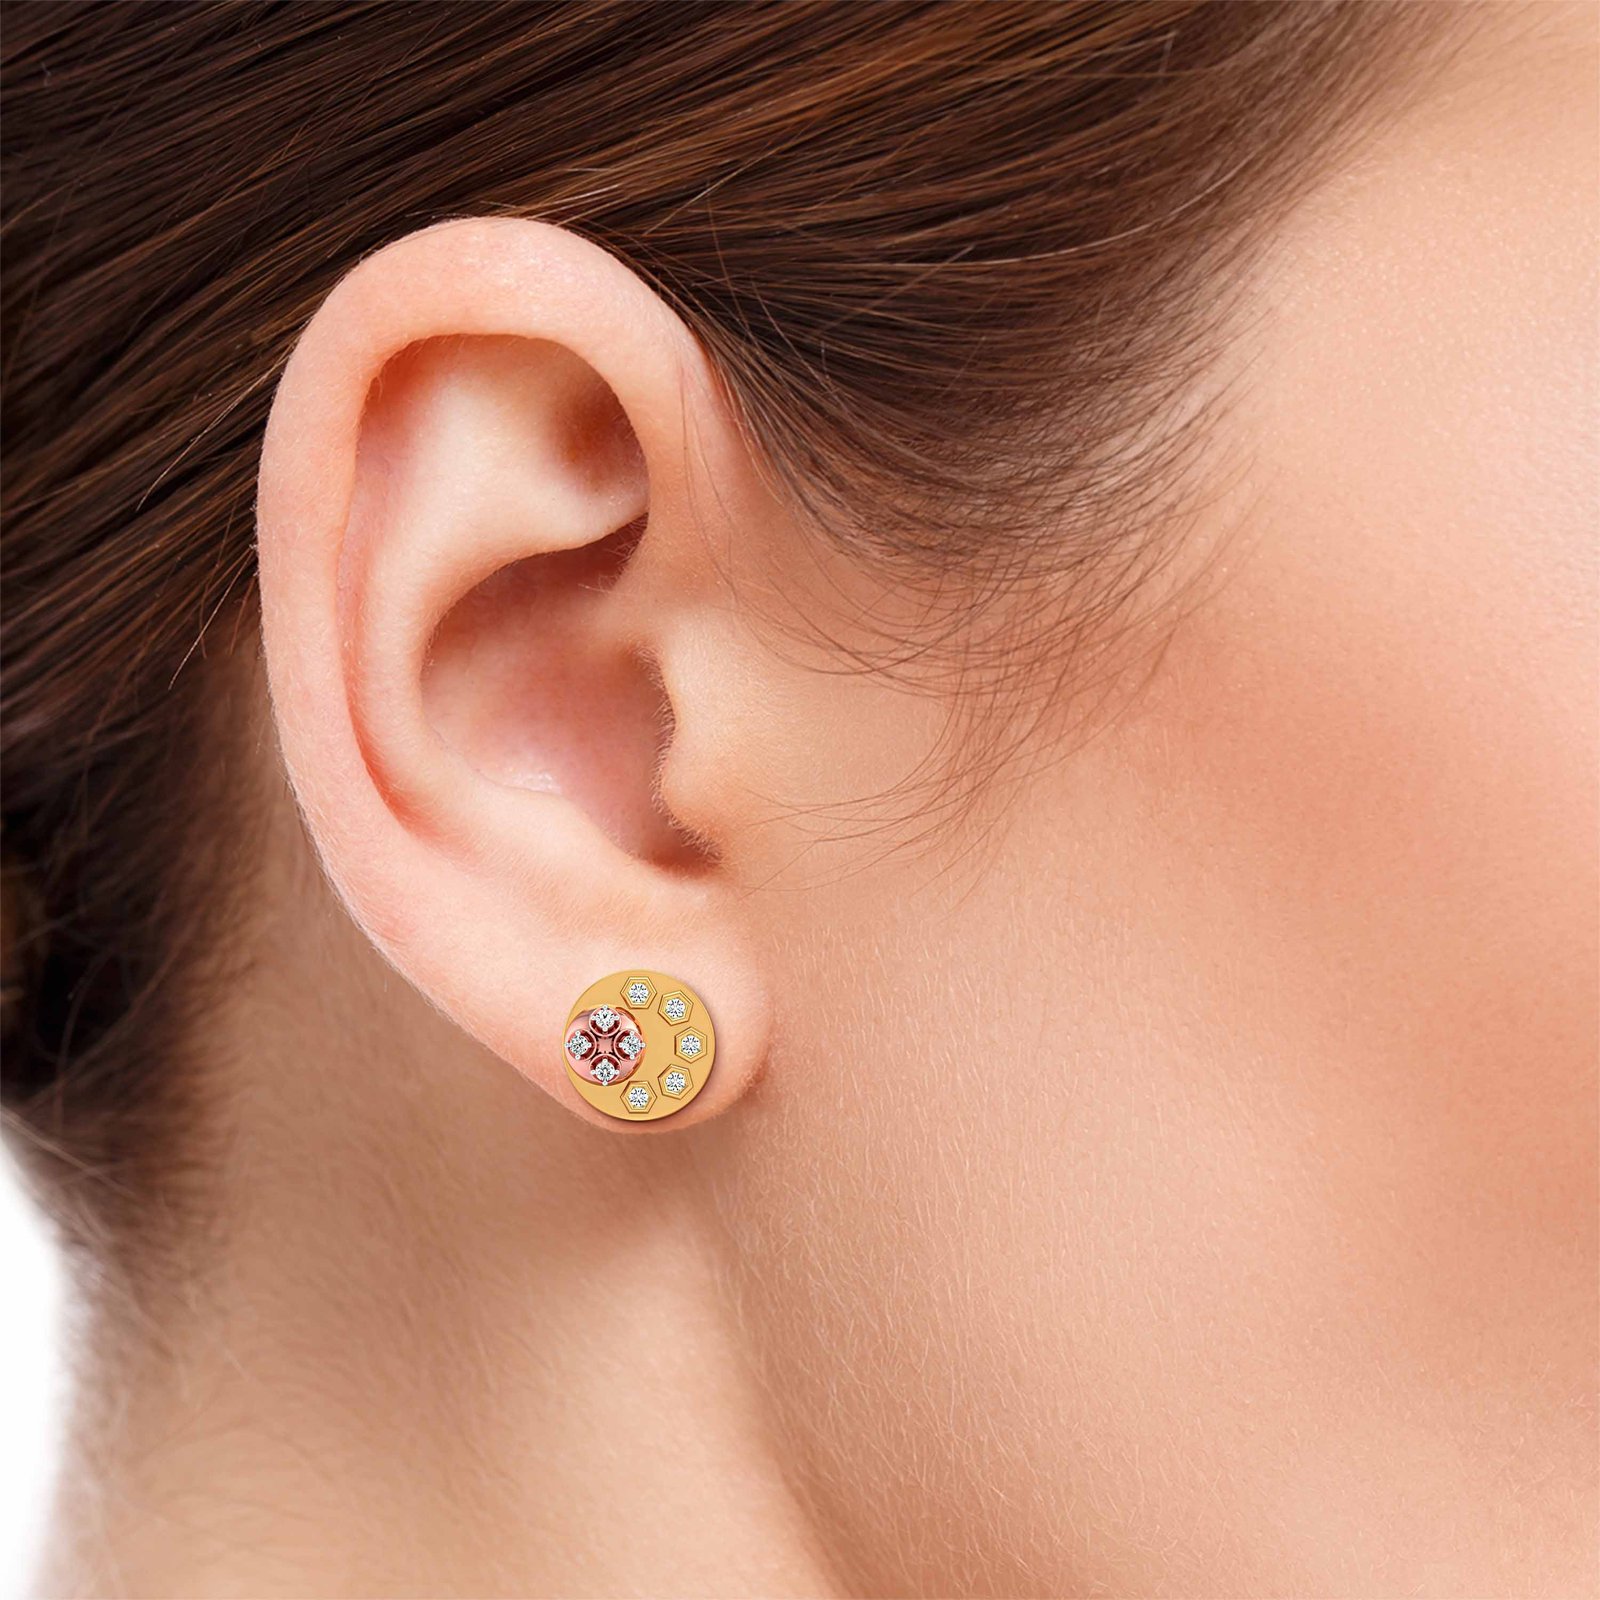 Ear Palette Diamond Earring In Pure Gold By Dhanji Jewels